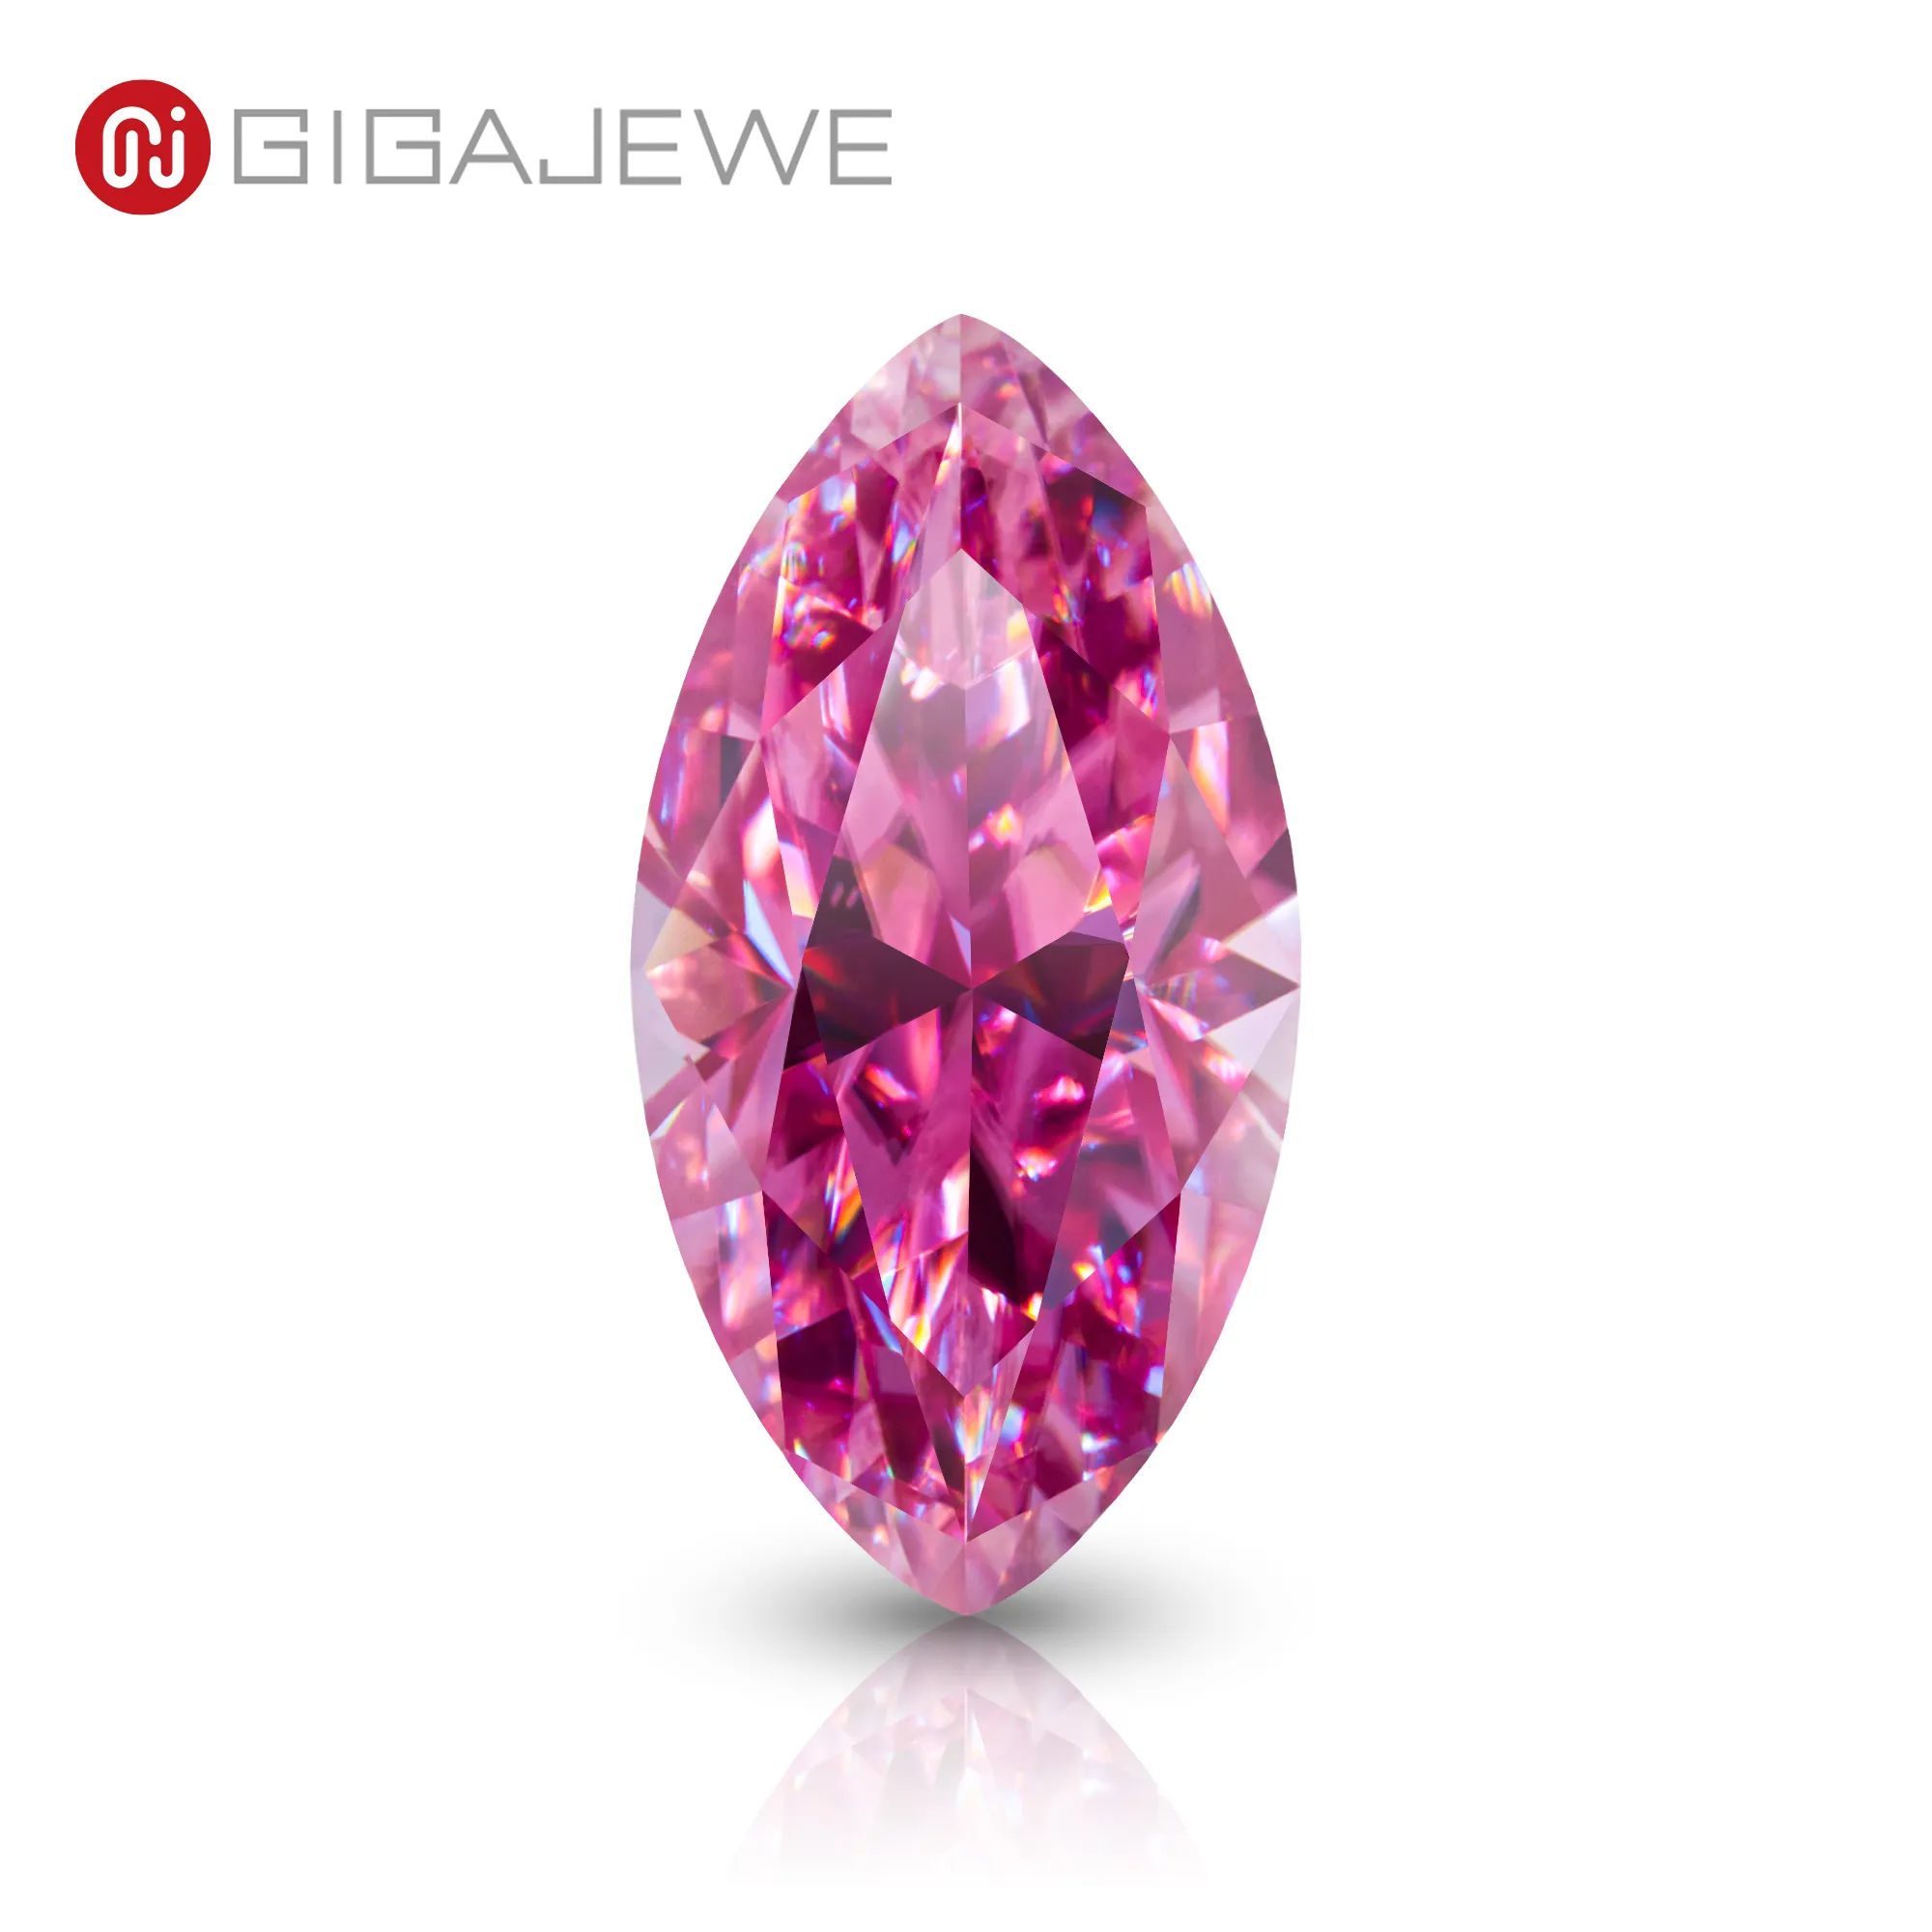 GIGAJEWE couleur rose taille Marquise VVS1 moissanite diamant 1-3ct pour la fabrication de bijoux